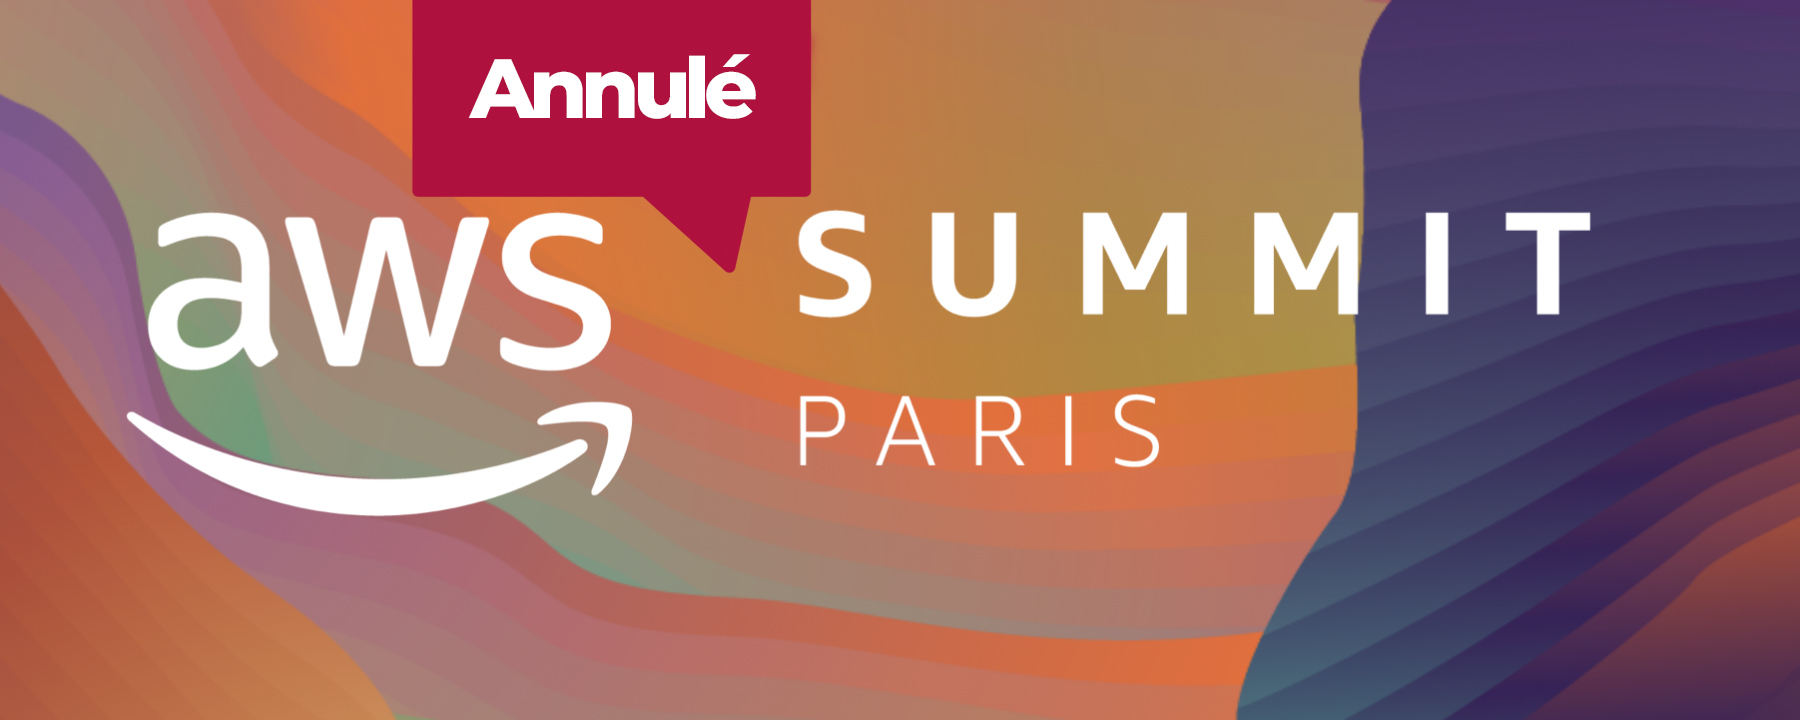 AWS Paris Summit 2020, un événement organisé par Amazon